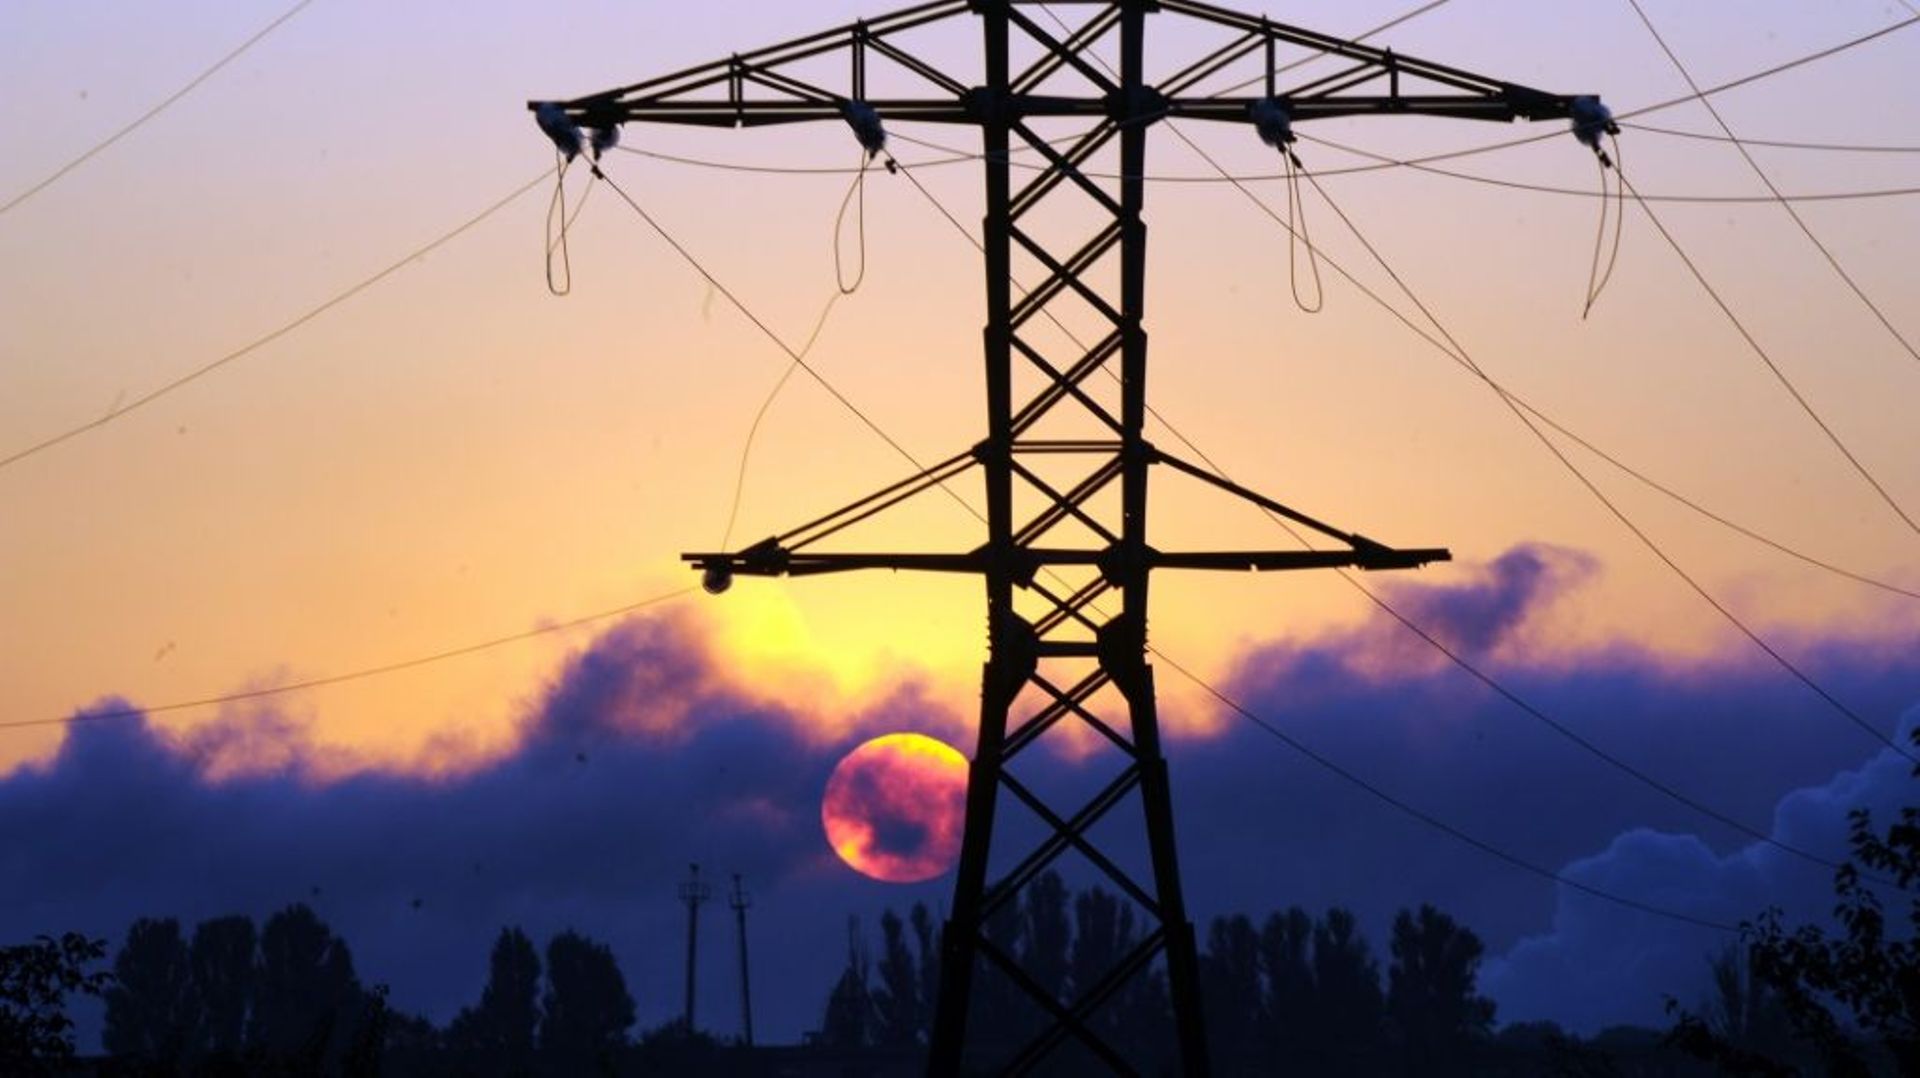 Le réseau électrique ukrainien est désormais connecté au réseau européen, ce qui doit aider à préserver sa stabilité et son fonctionnement malgré la guerre